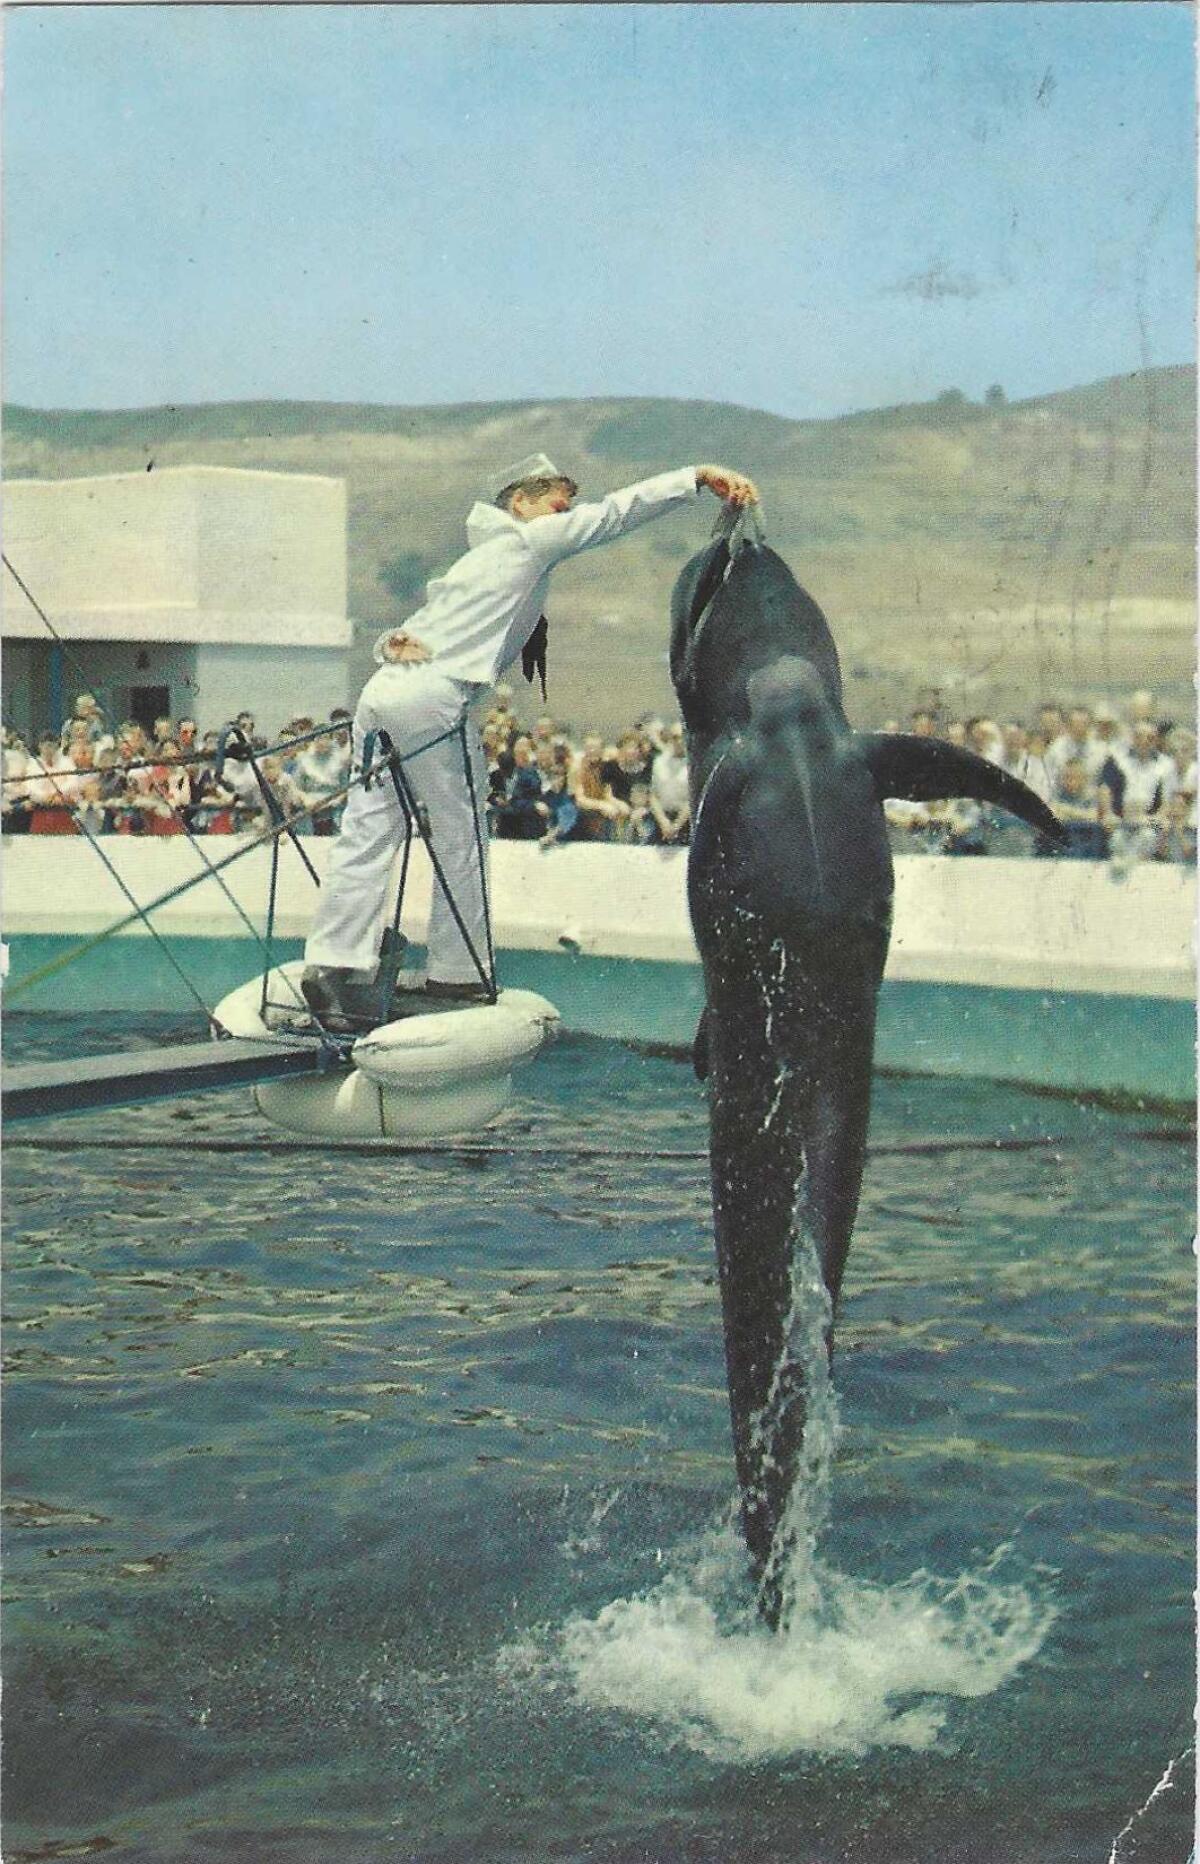 Un homme en tenue de marin tend de la nourriture à une baleine sautant d'un réservoir